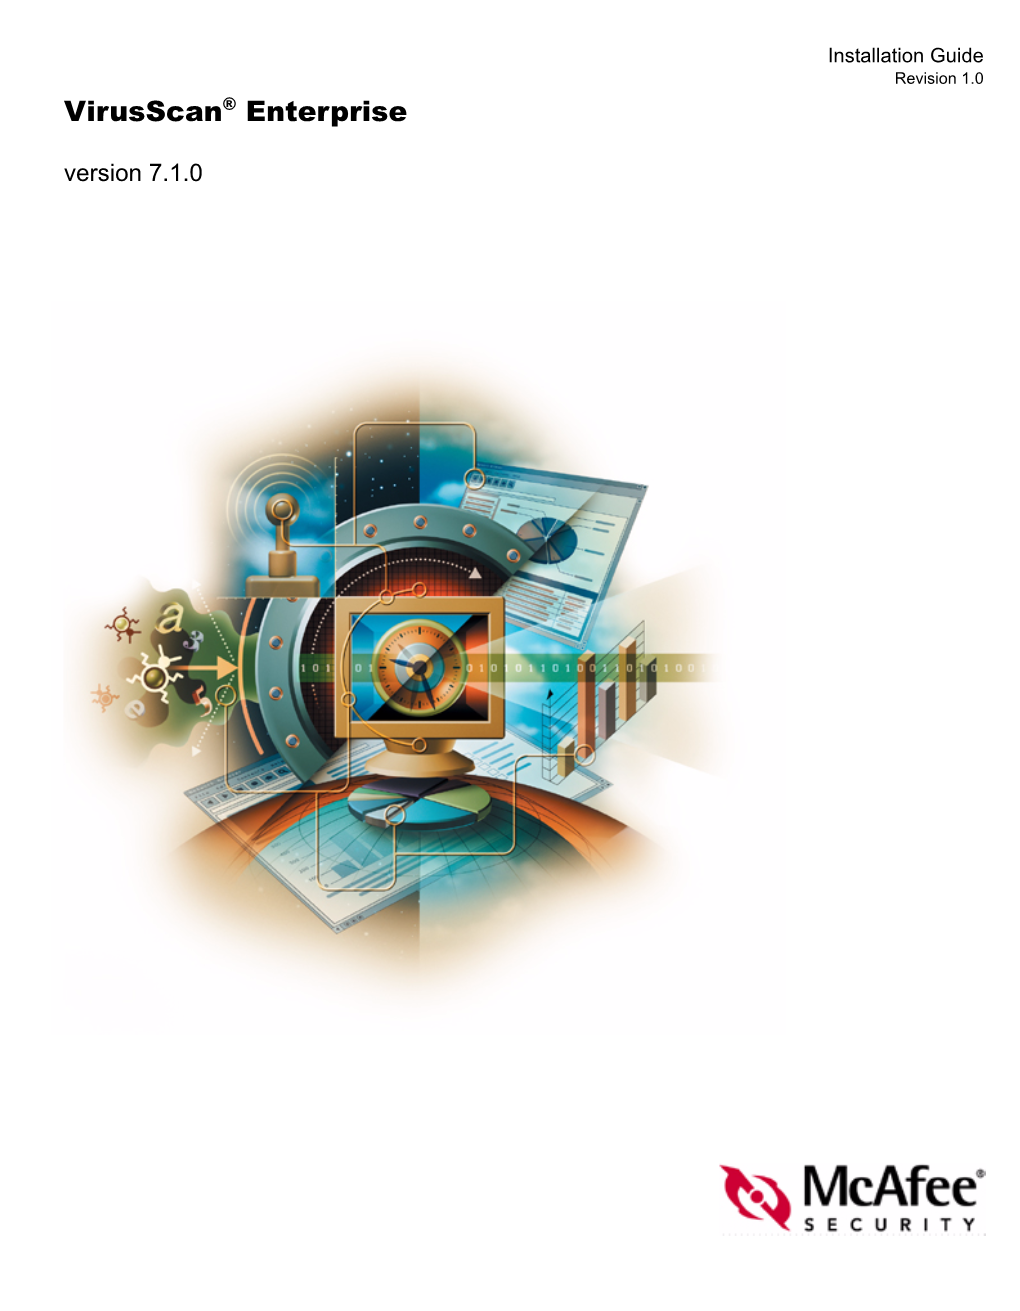 Virusscan Enterprise 7.1.0 Installation Guide